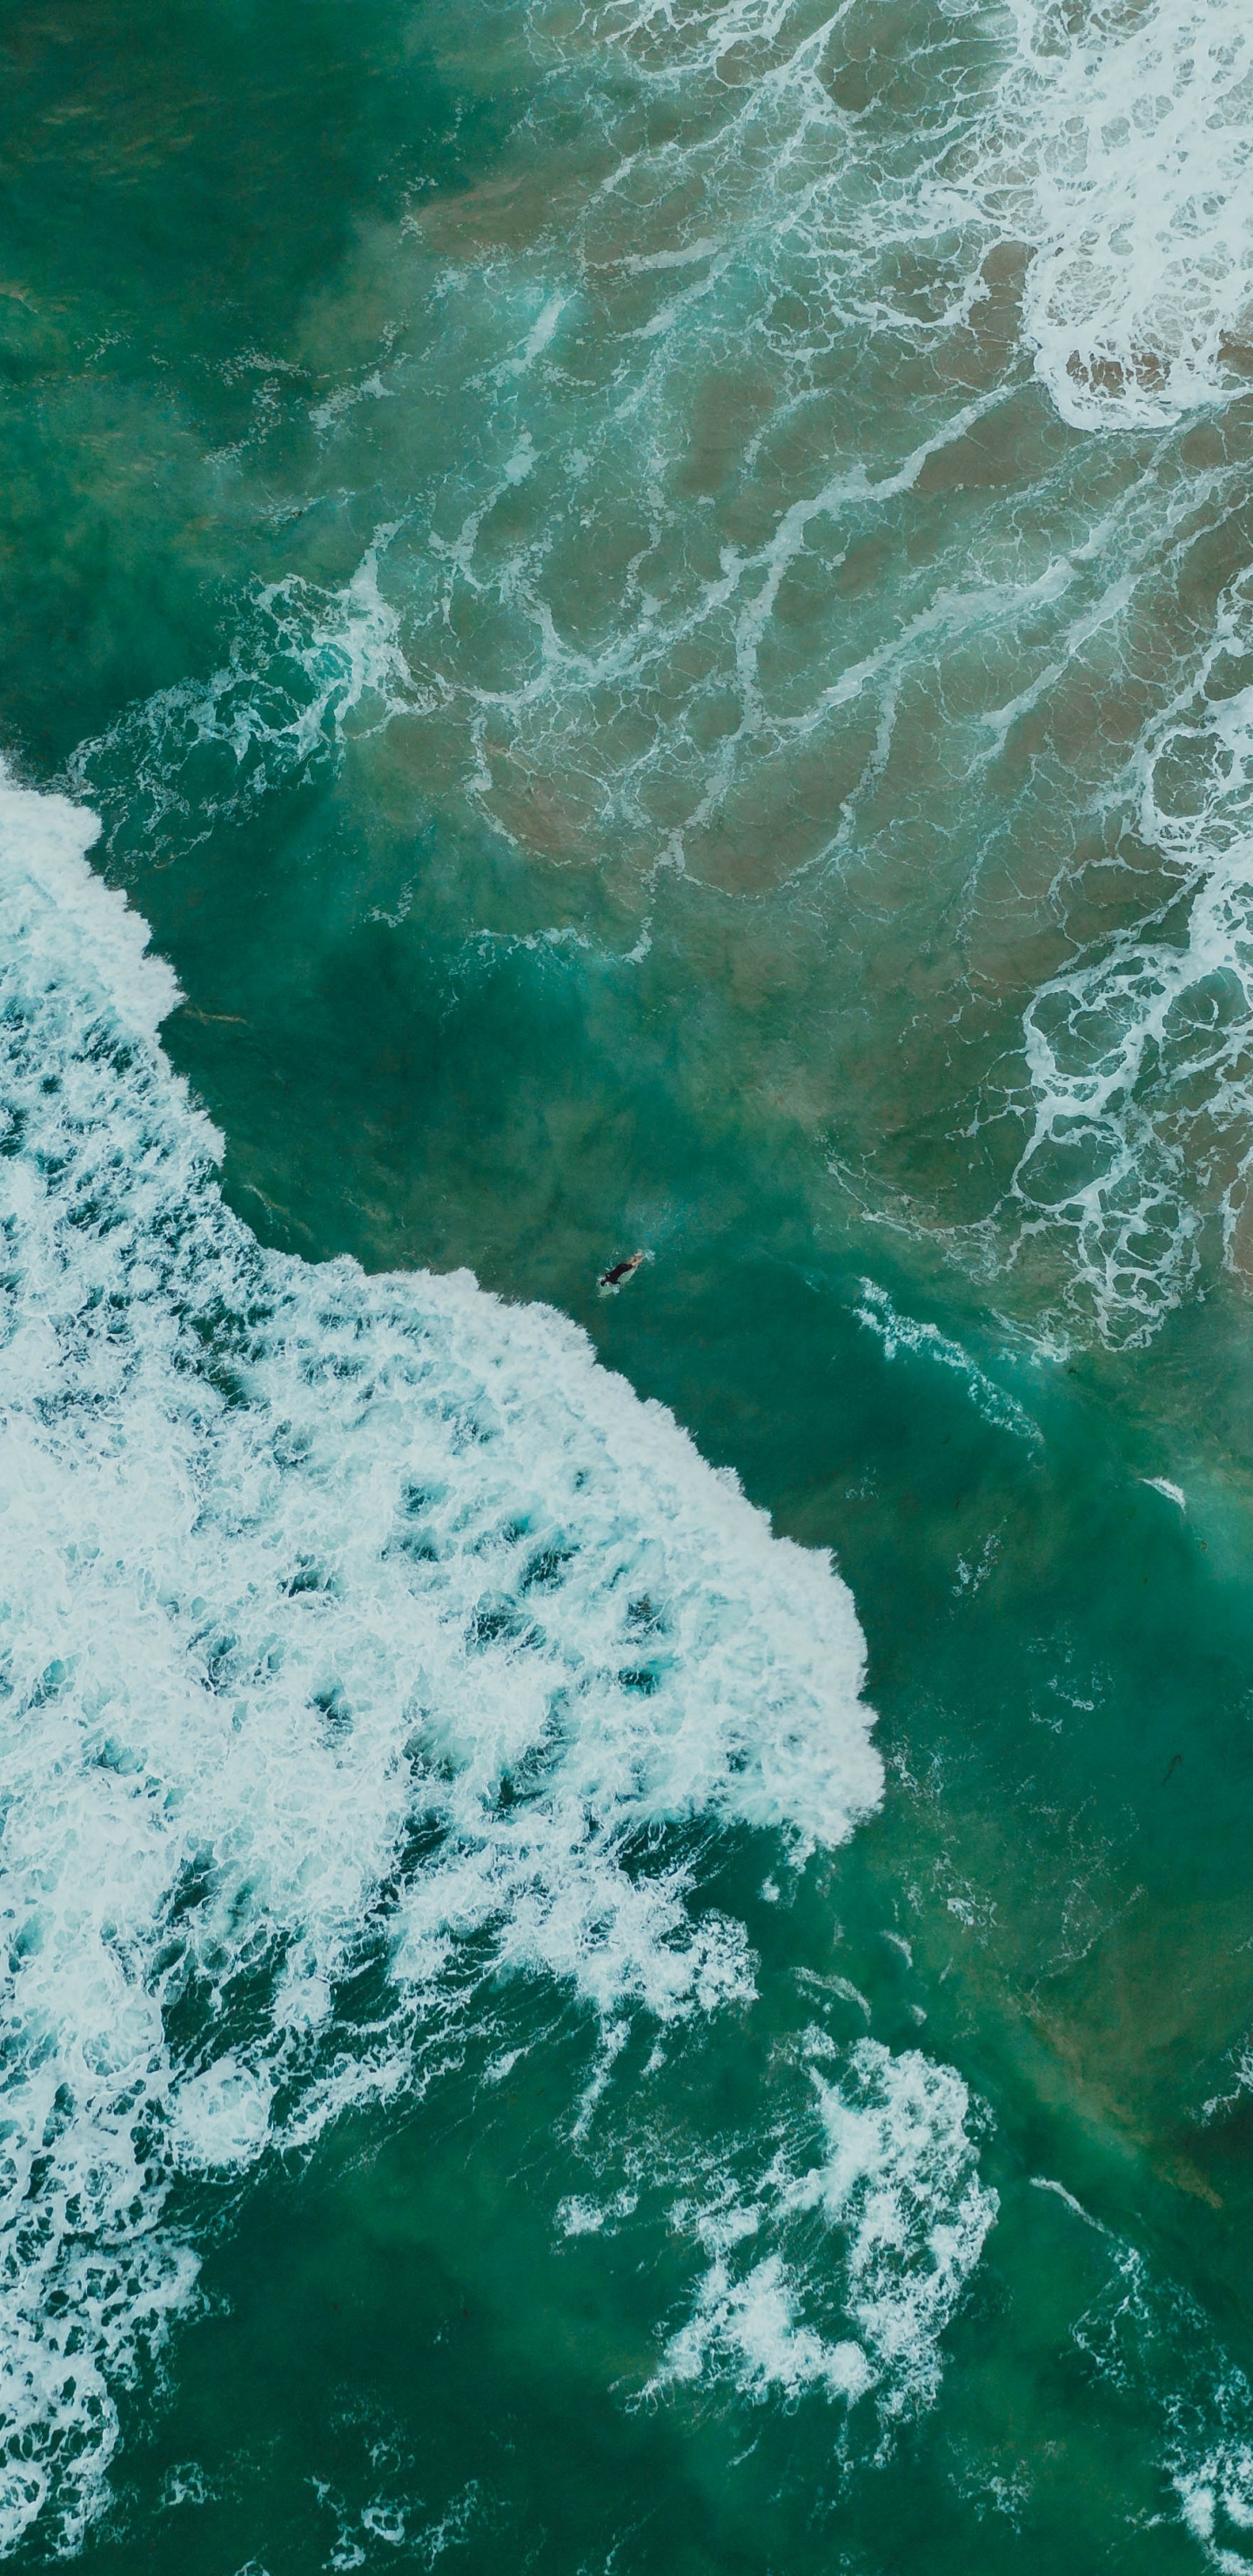 Ozean, Meer, Wind Welle, Wasser, Welle. Wallpaper in 1440x2960 Resolution